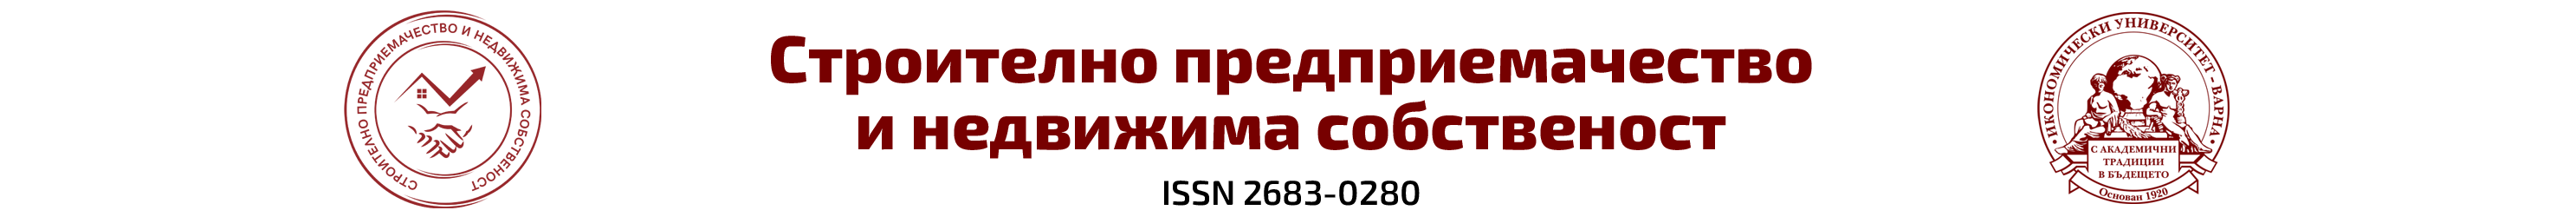 logo bg